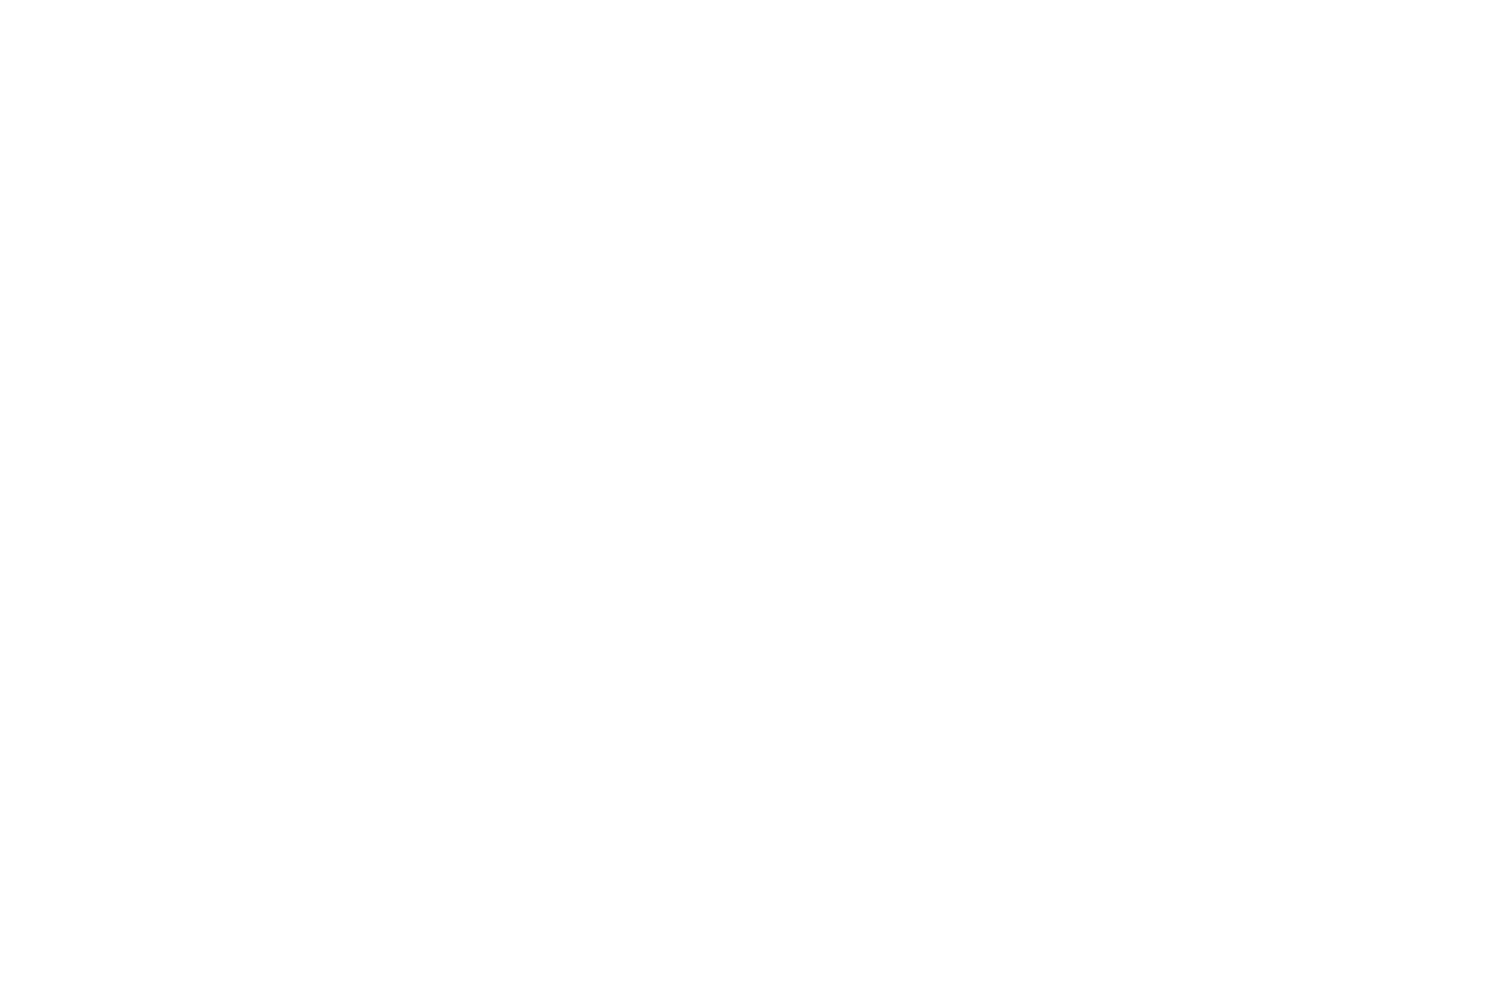 Peter McMann